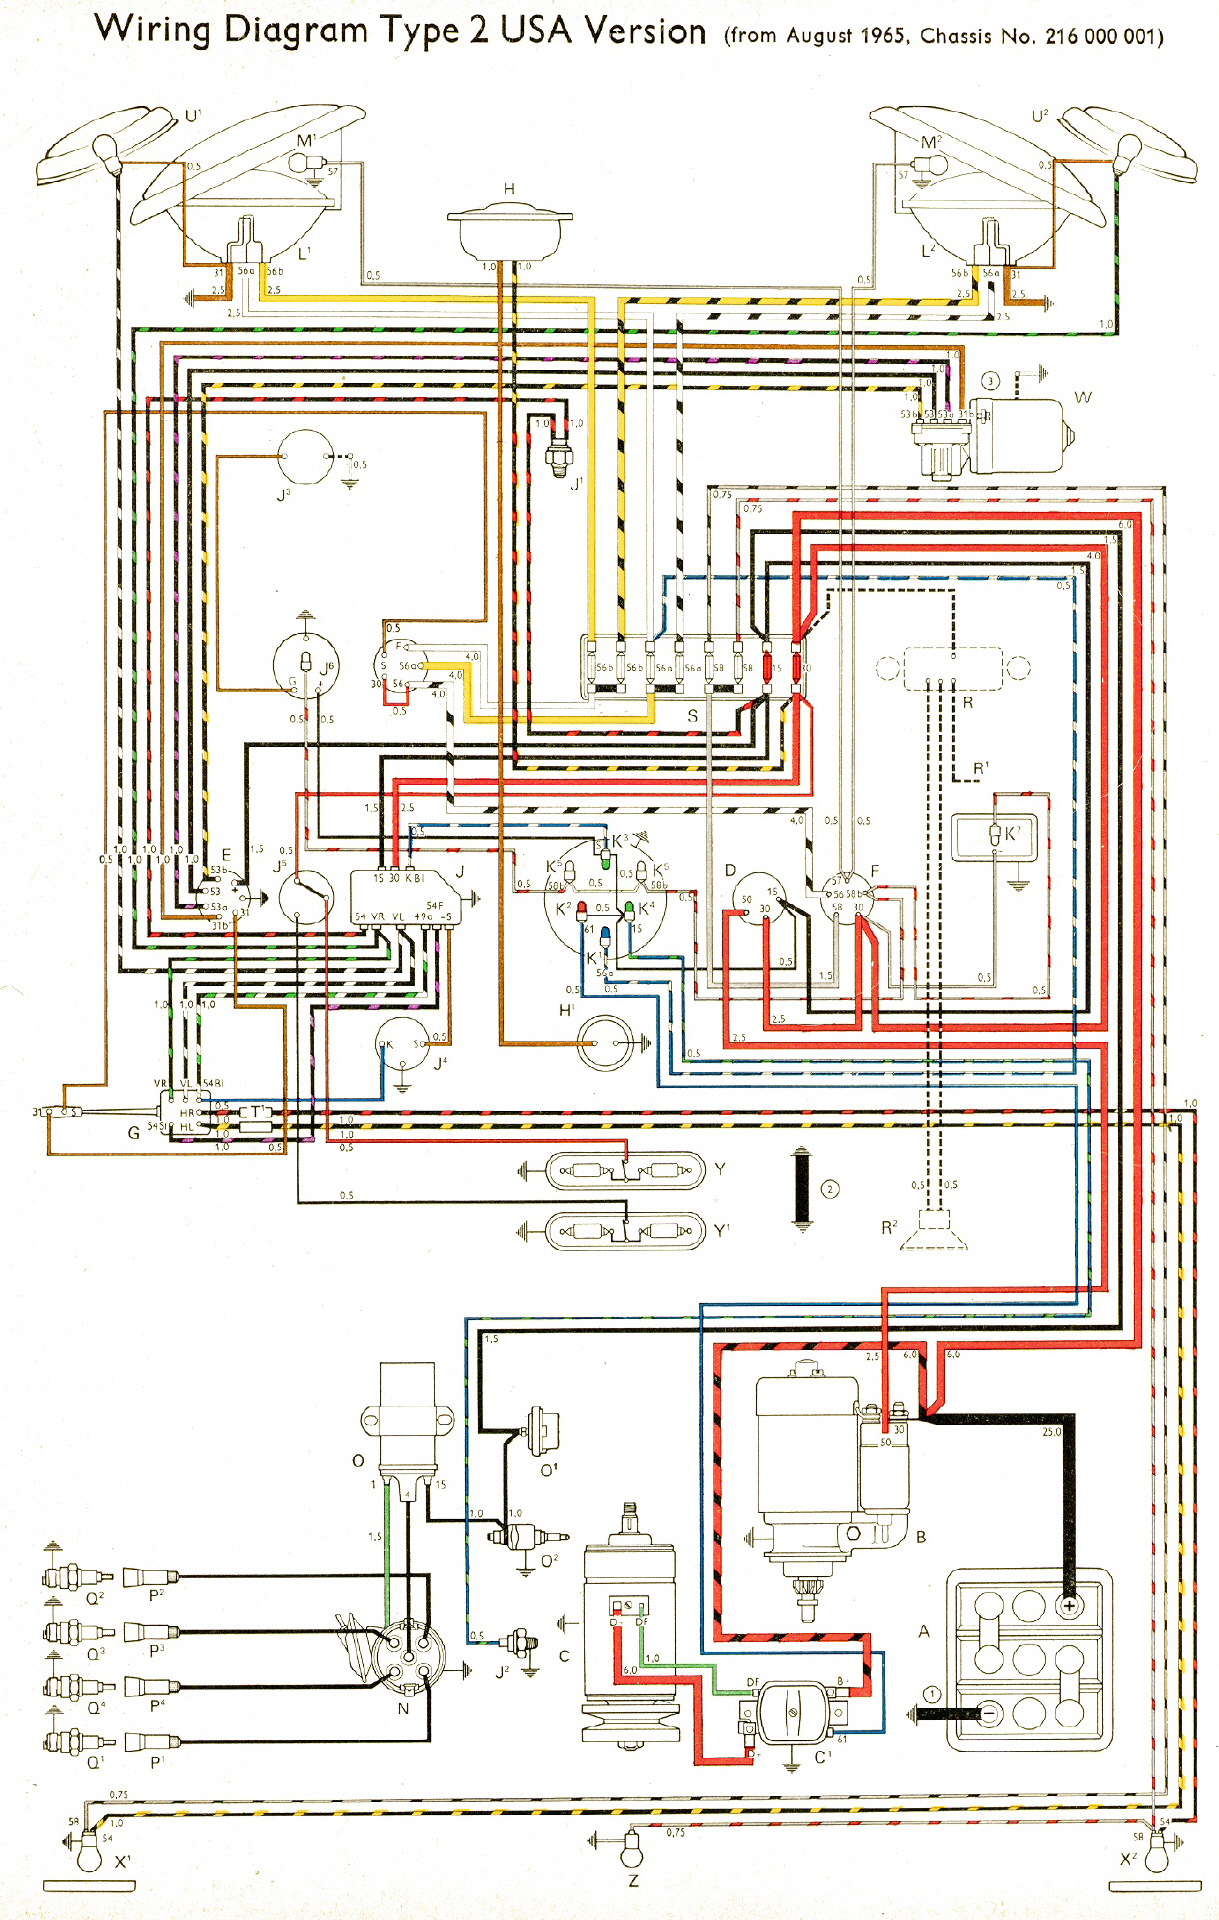 Bus Schaltpläne 1975 volkswagen wiring diagram 